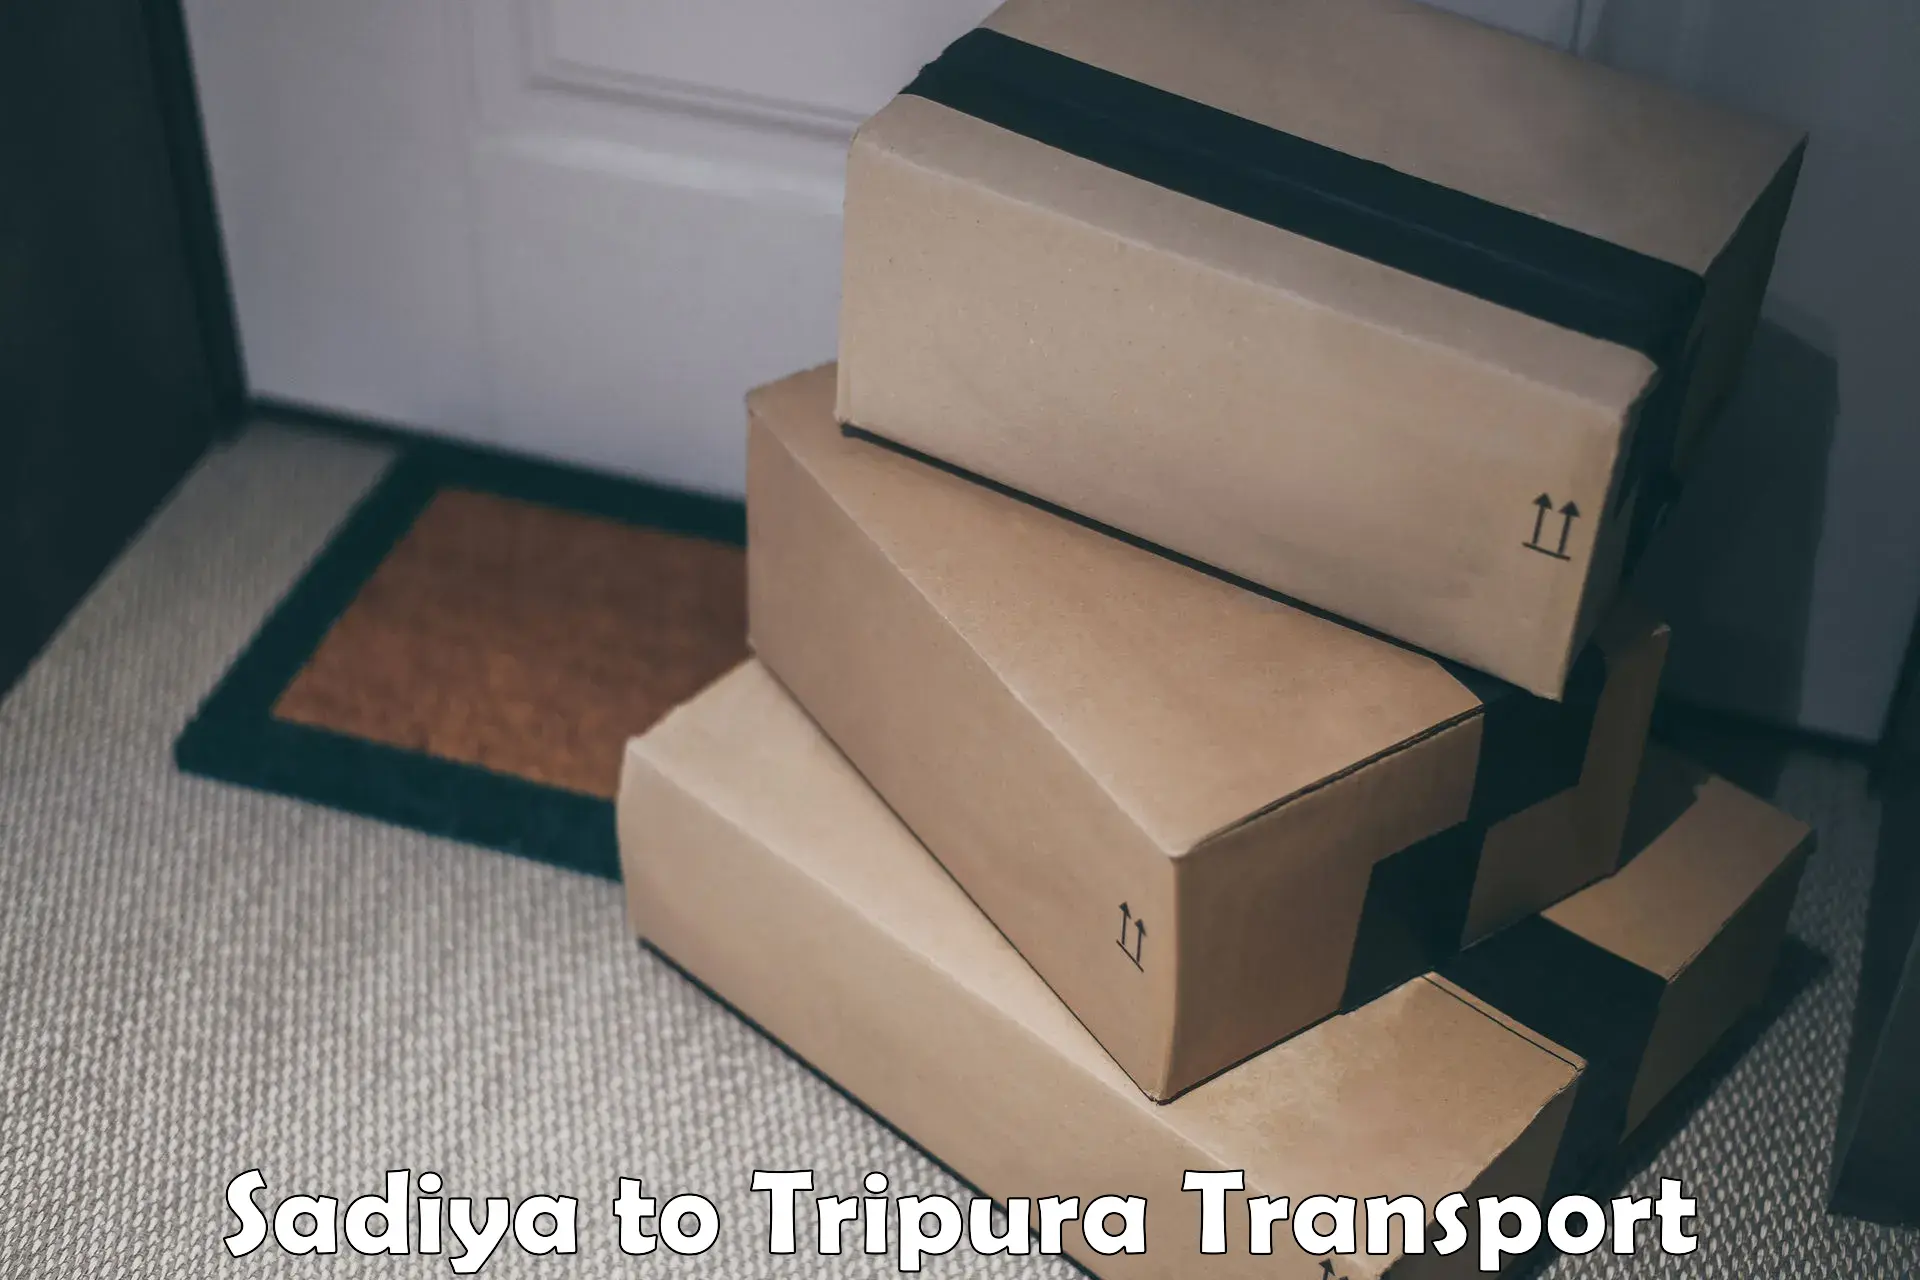 Vehicle parcel service Sadiya to Udaipur Tripura